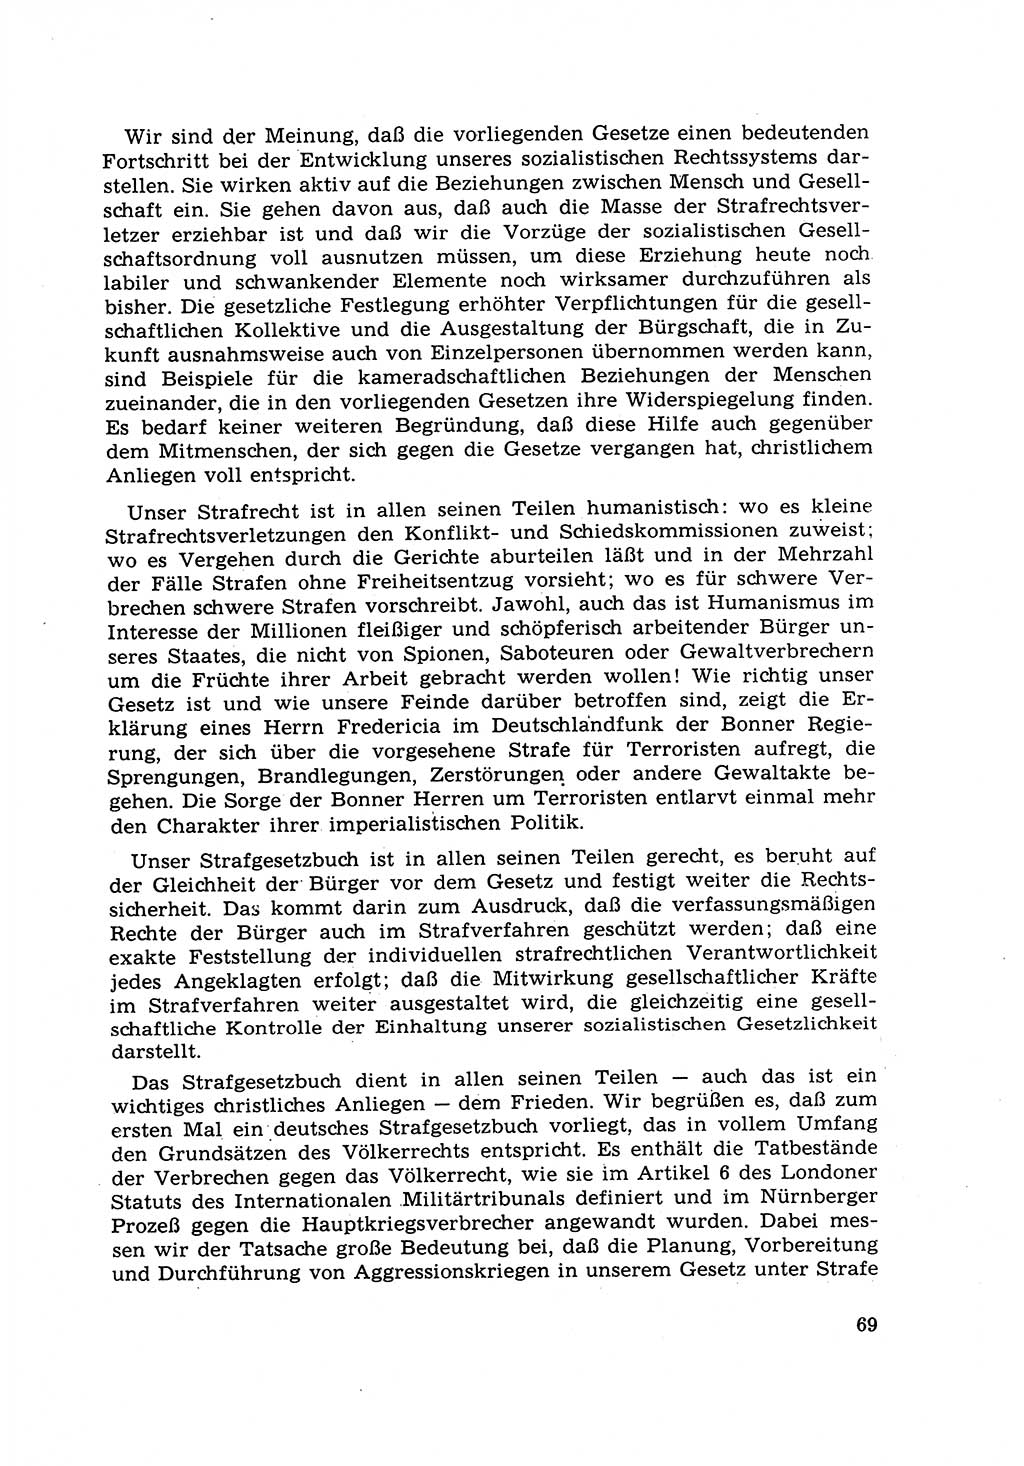 Strafrecht [Deutsche Demokratische Republik (DDR)] 1968, Seite 69 (Strafr. DDR 1968, S. 69)